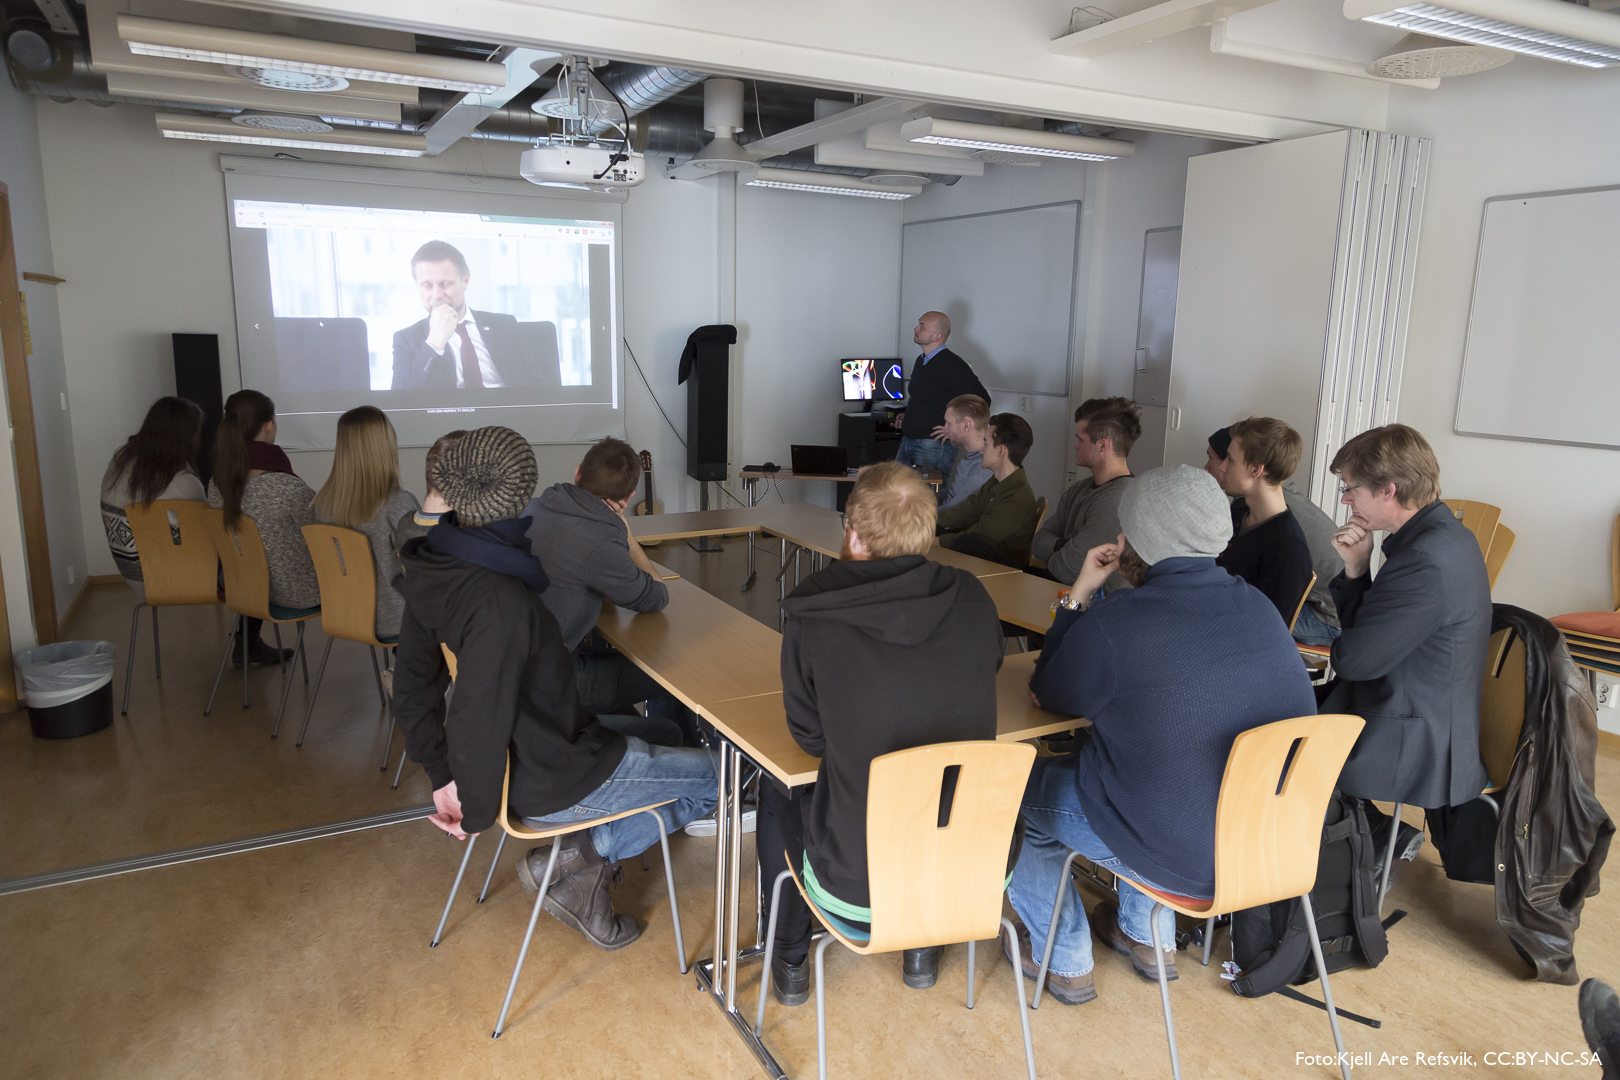 Undervisningsleder på TVF, Eirik Kaasa Eliassen viser frem showreel fra produksjoner som studenter på TVF har gjort.